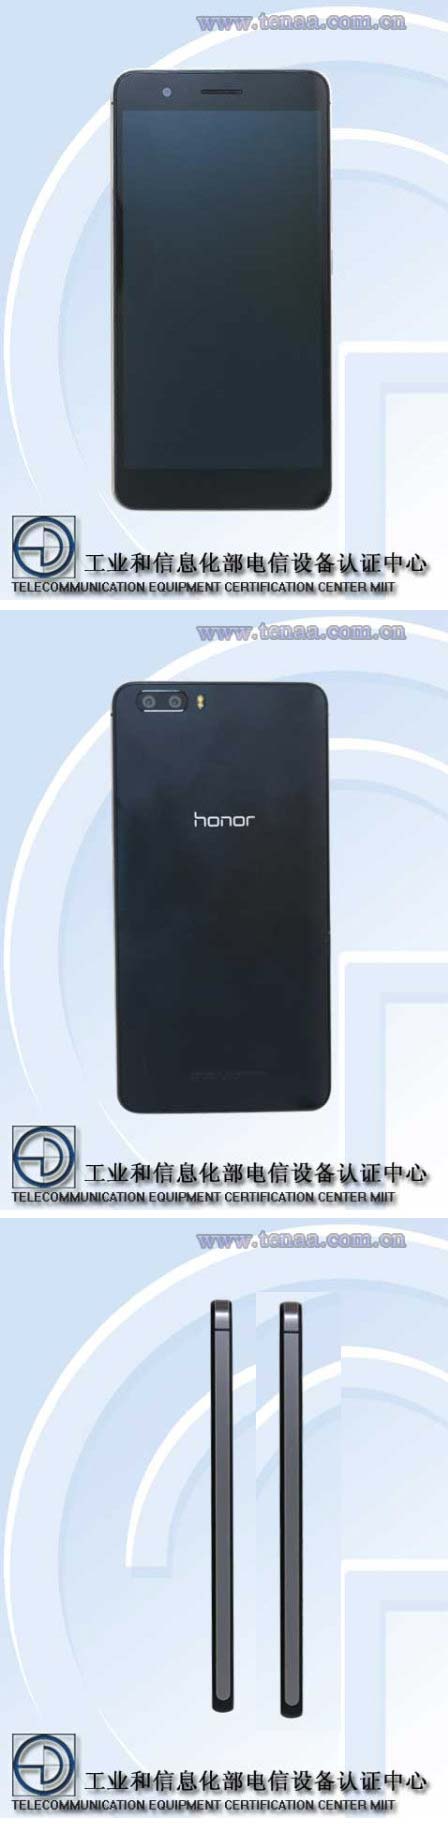 На фото можно увидеть аппарат Huawei Honor 6X